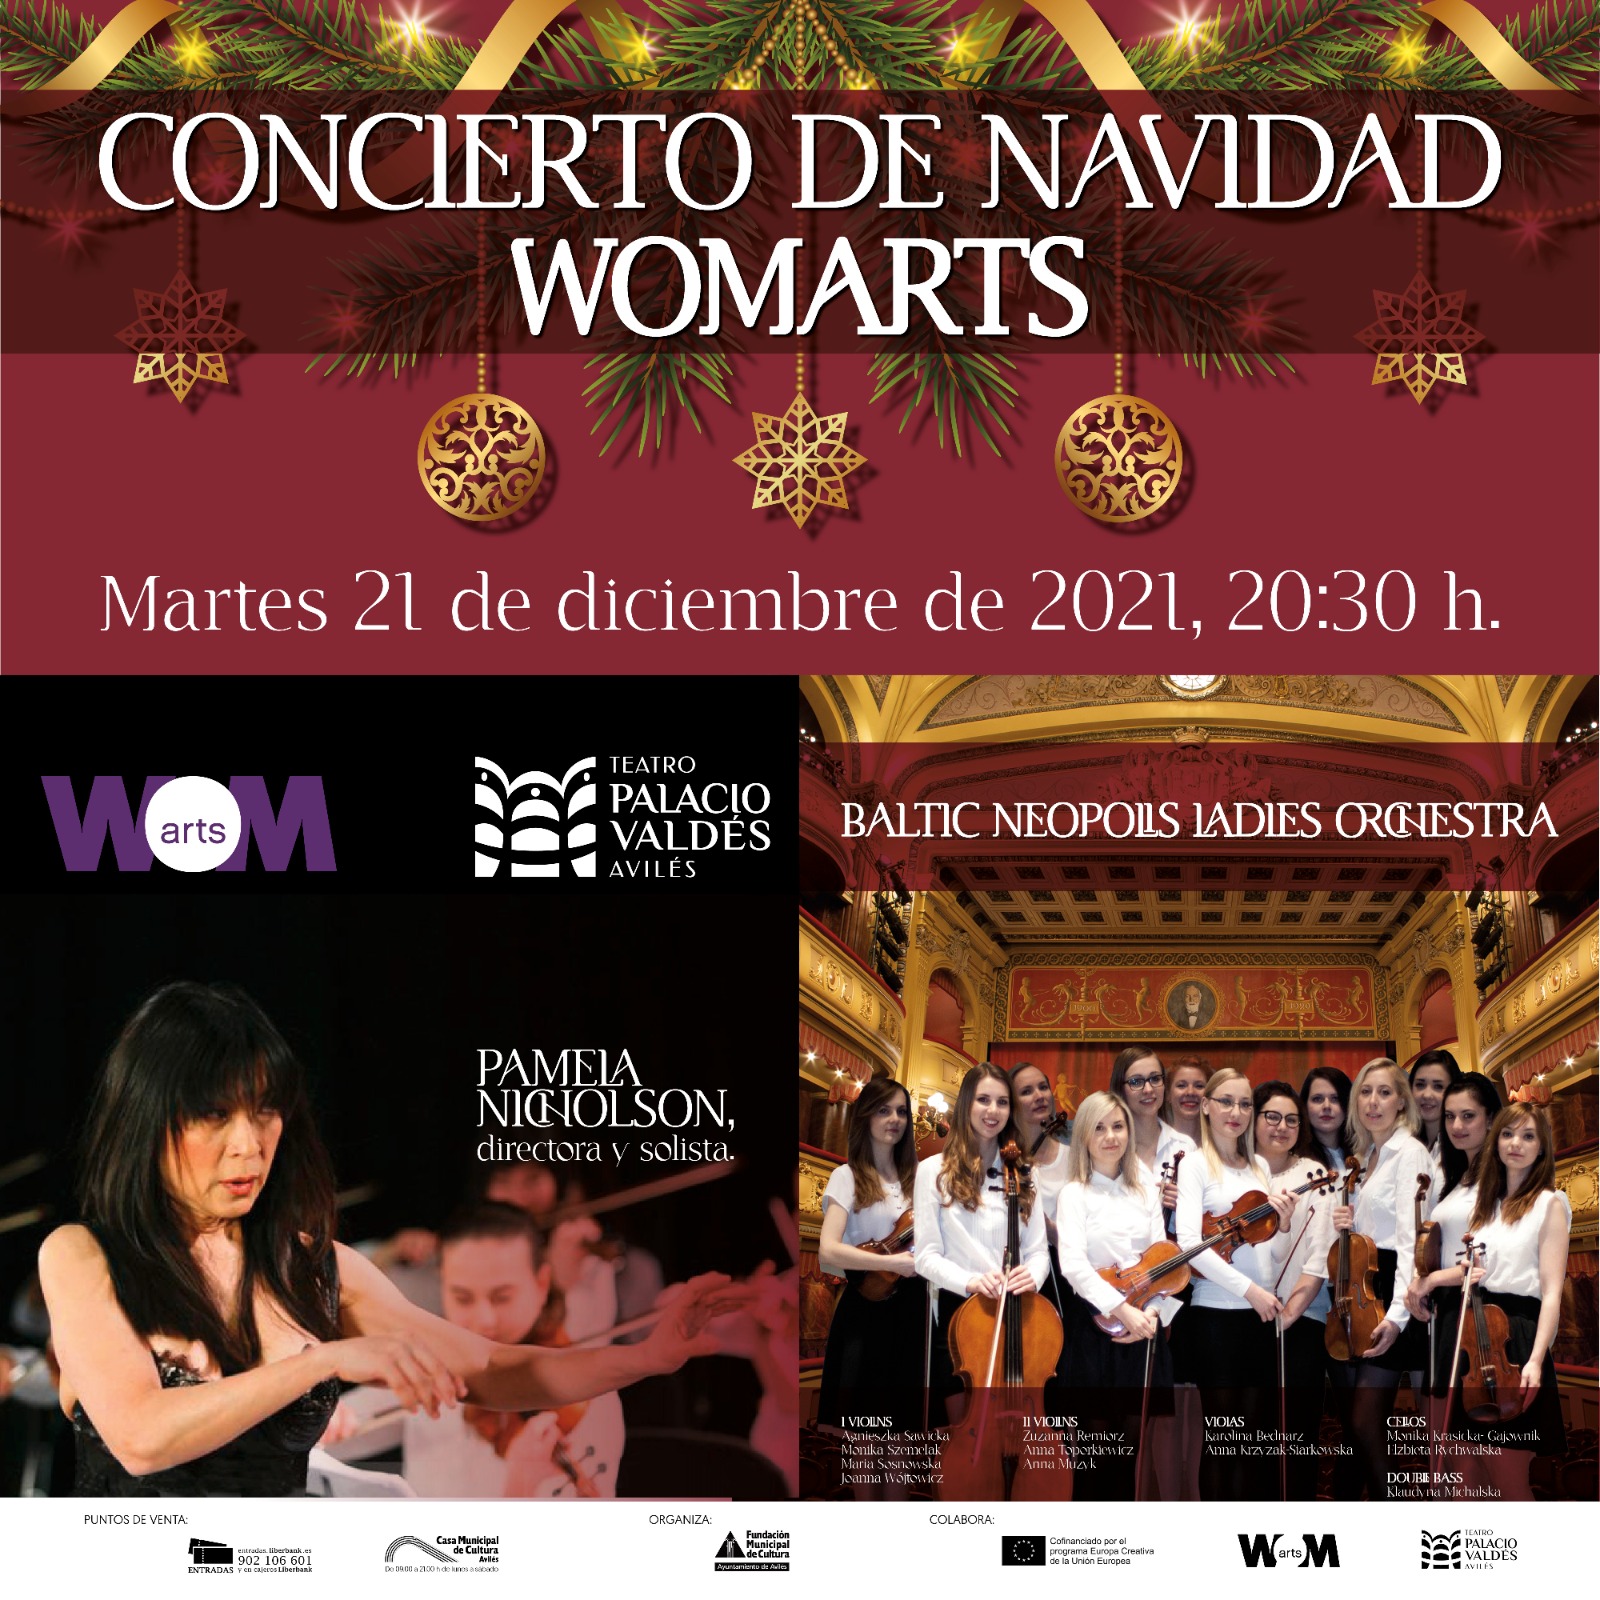 Wom@rts Sinfónico, ” concierto de navidad único” en Avilés